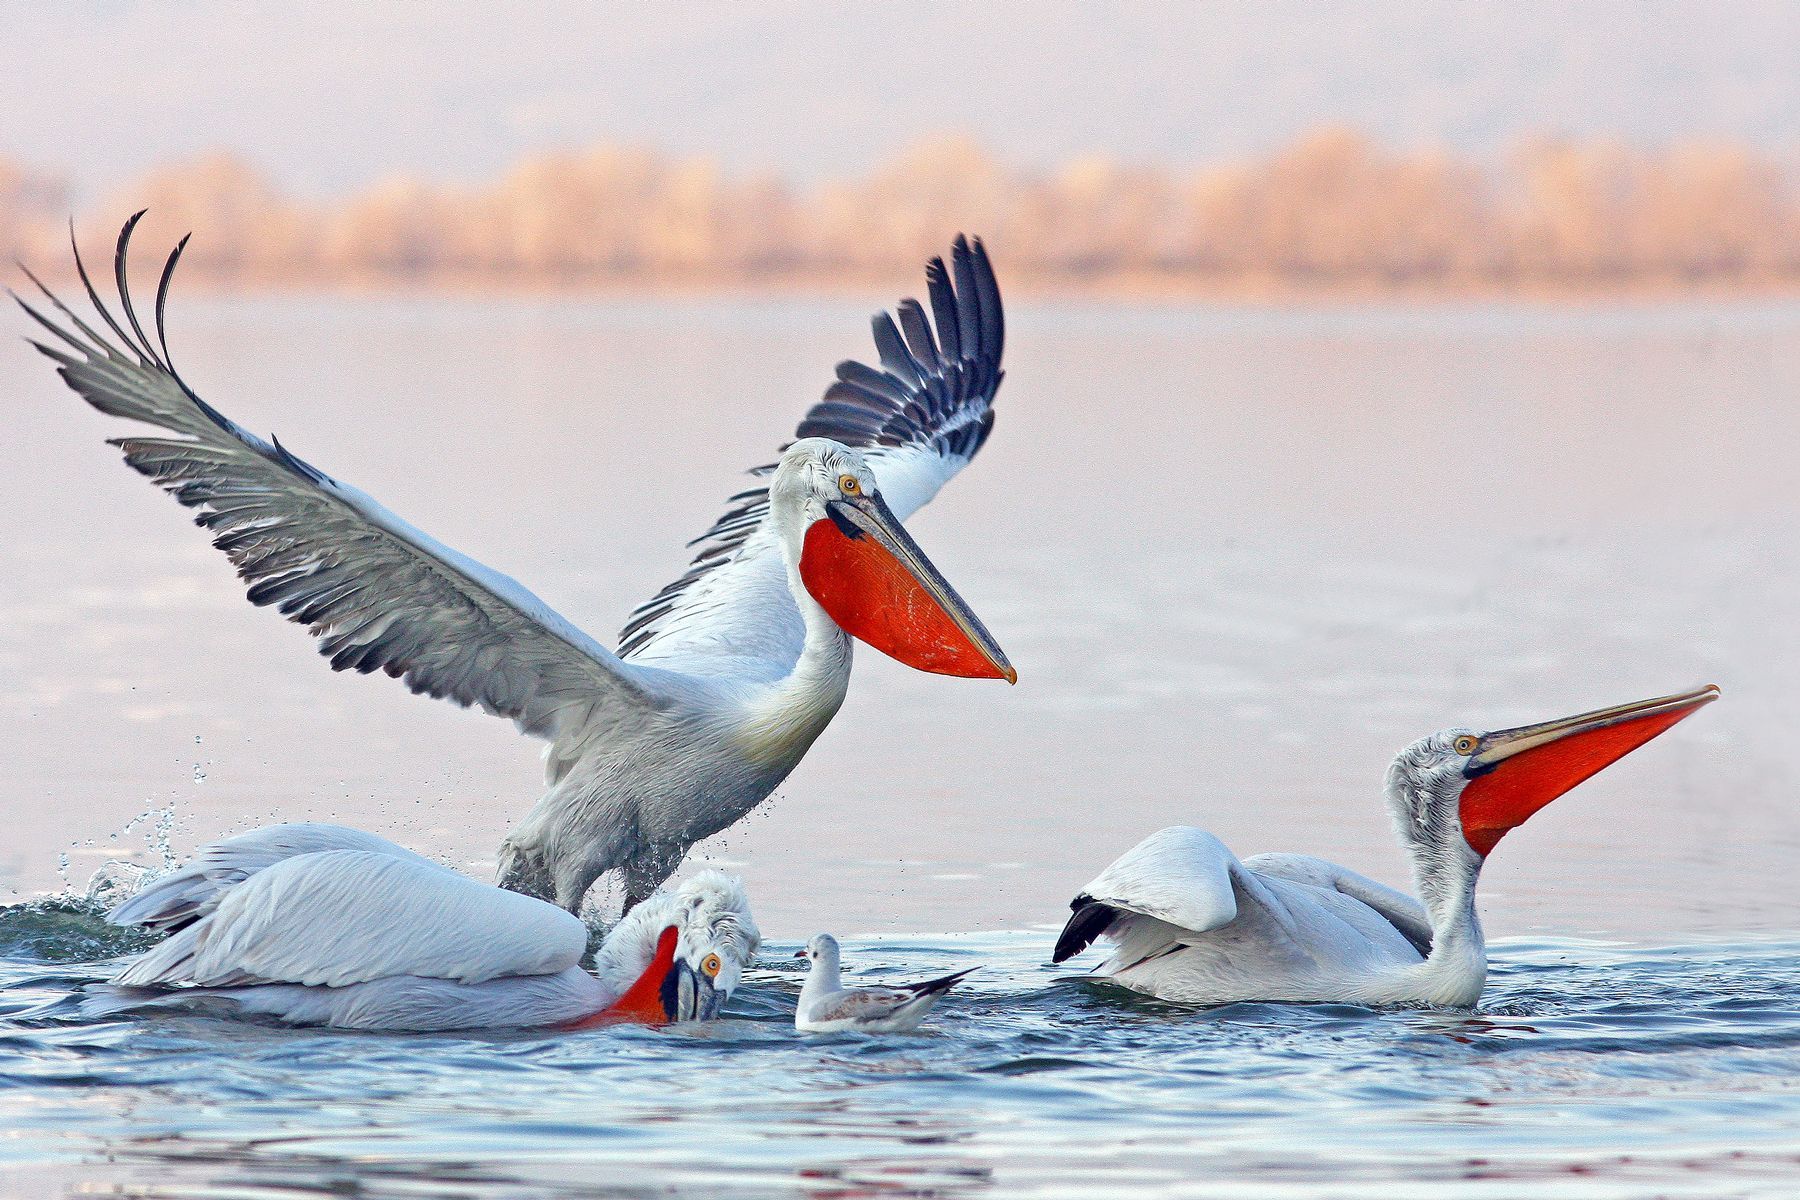 These Dalmatian Pelicans in Romania's Danube Delta are showing the bright red bill pouches of breeding birds in the Danube Delta